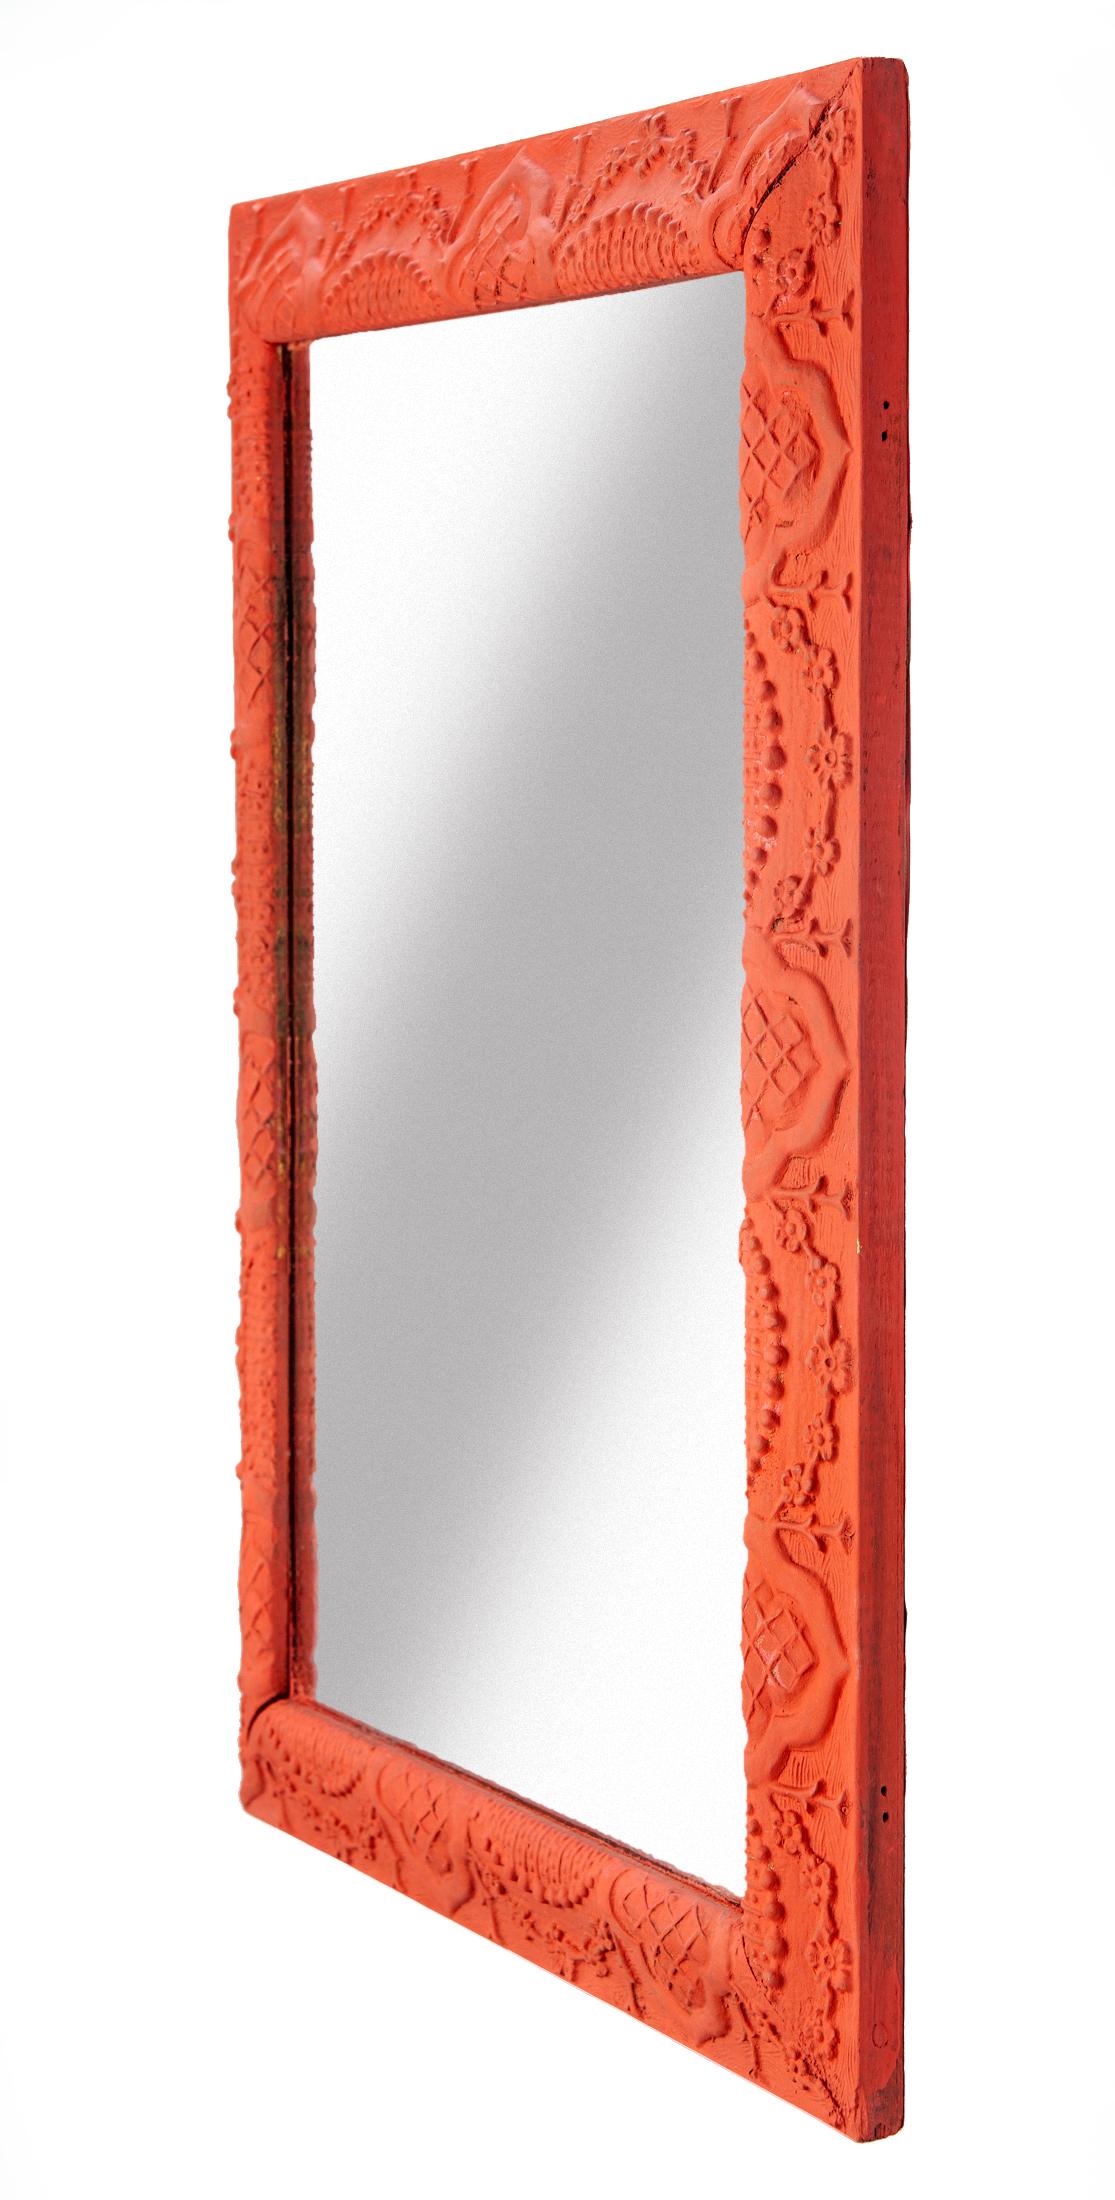 Cadre de mouvement esthétique du XIXe siècle en bois et gesso avec miroir neuf. Magnifique gesso détaillé peint à la main dans un superbe rouge corail. Câblé pour être suspendu à l'horizontale ou à la verticale.